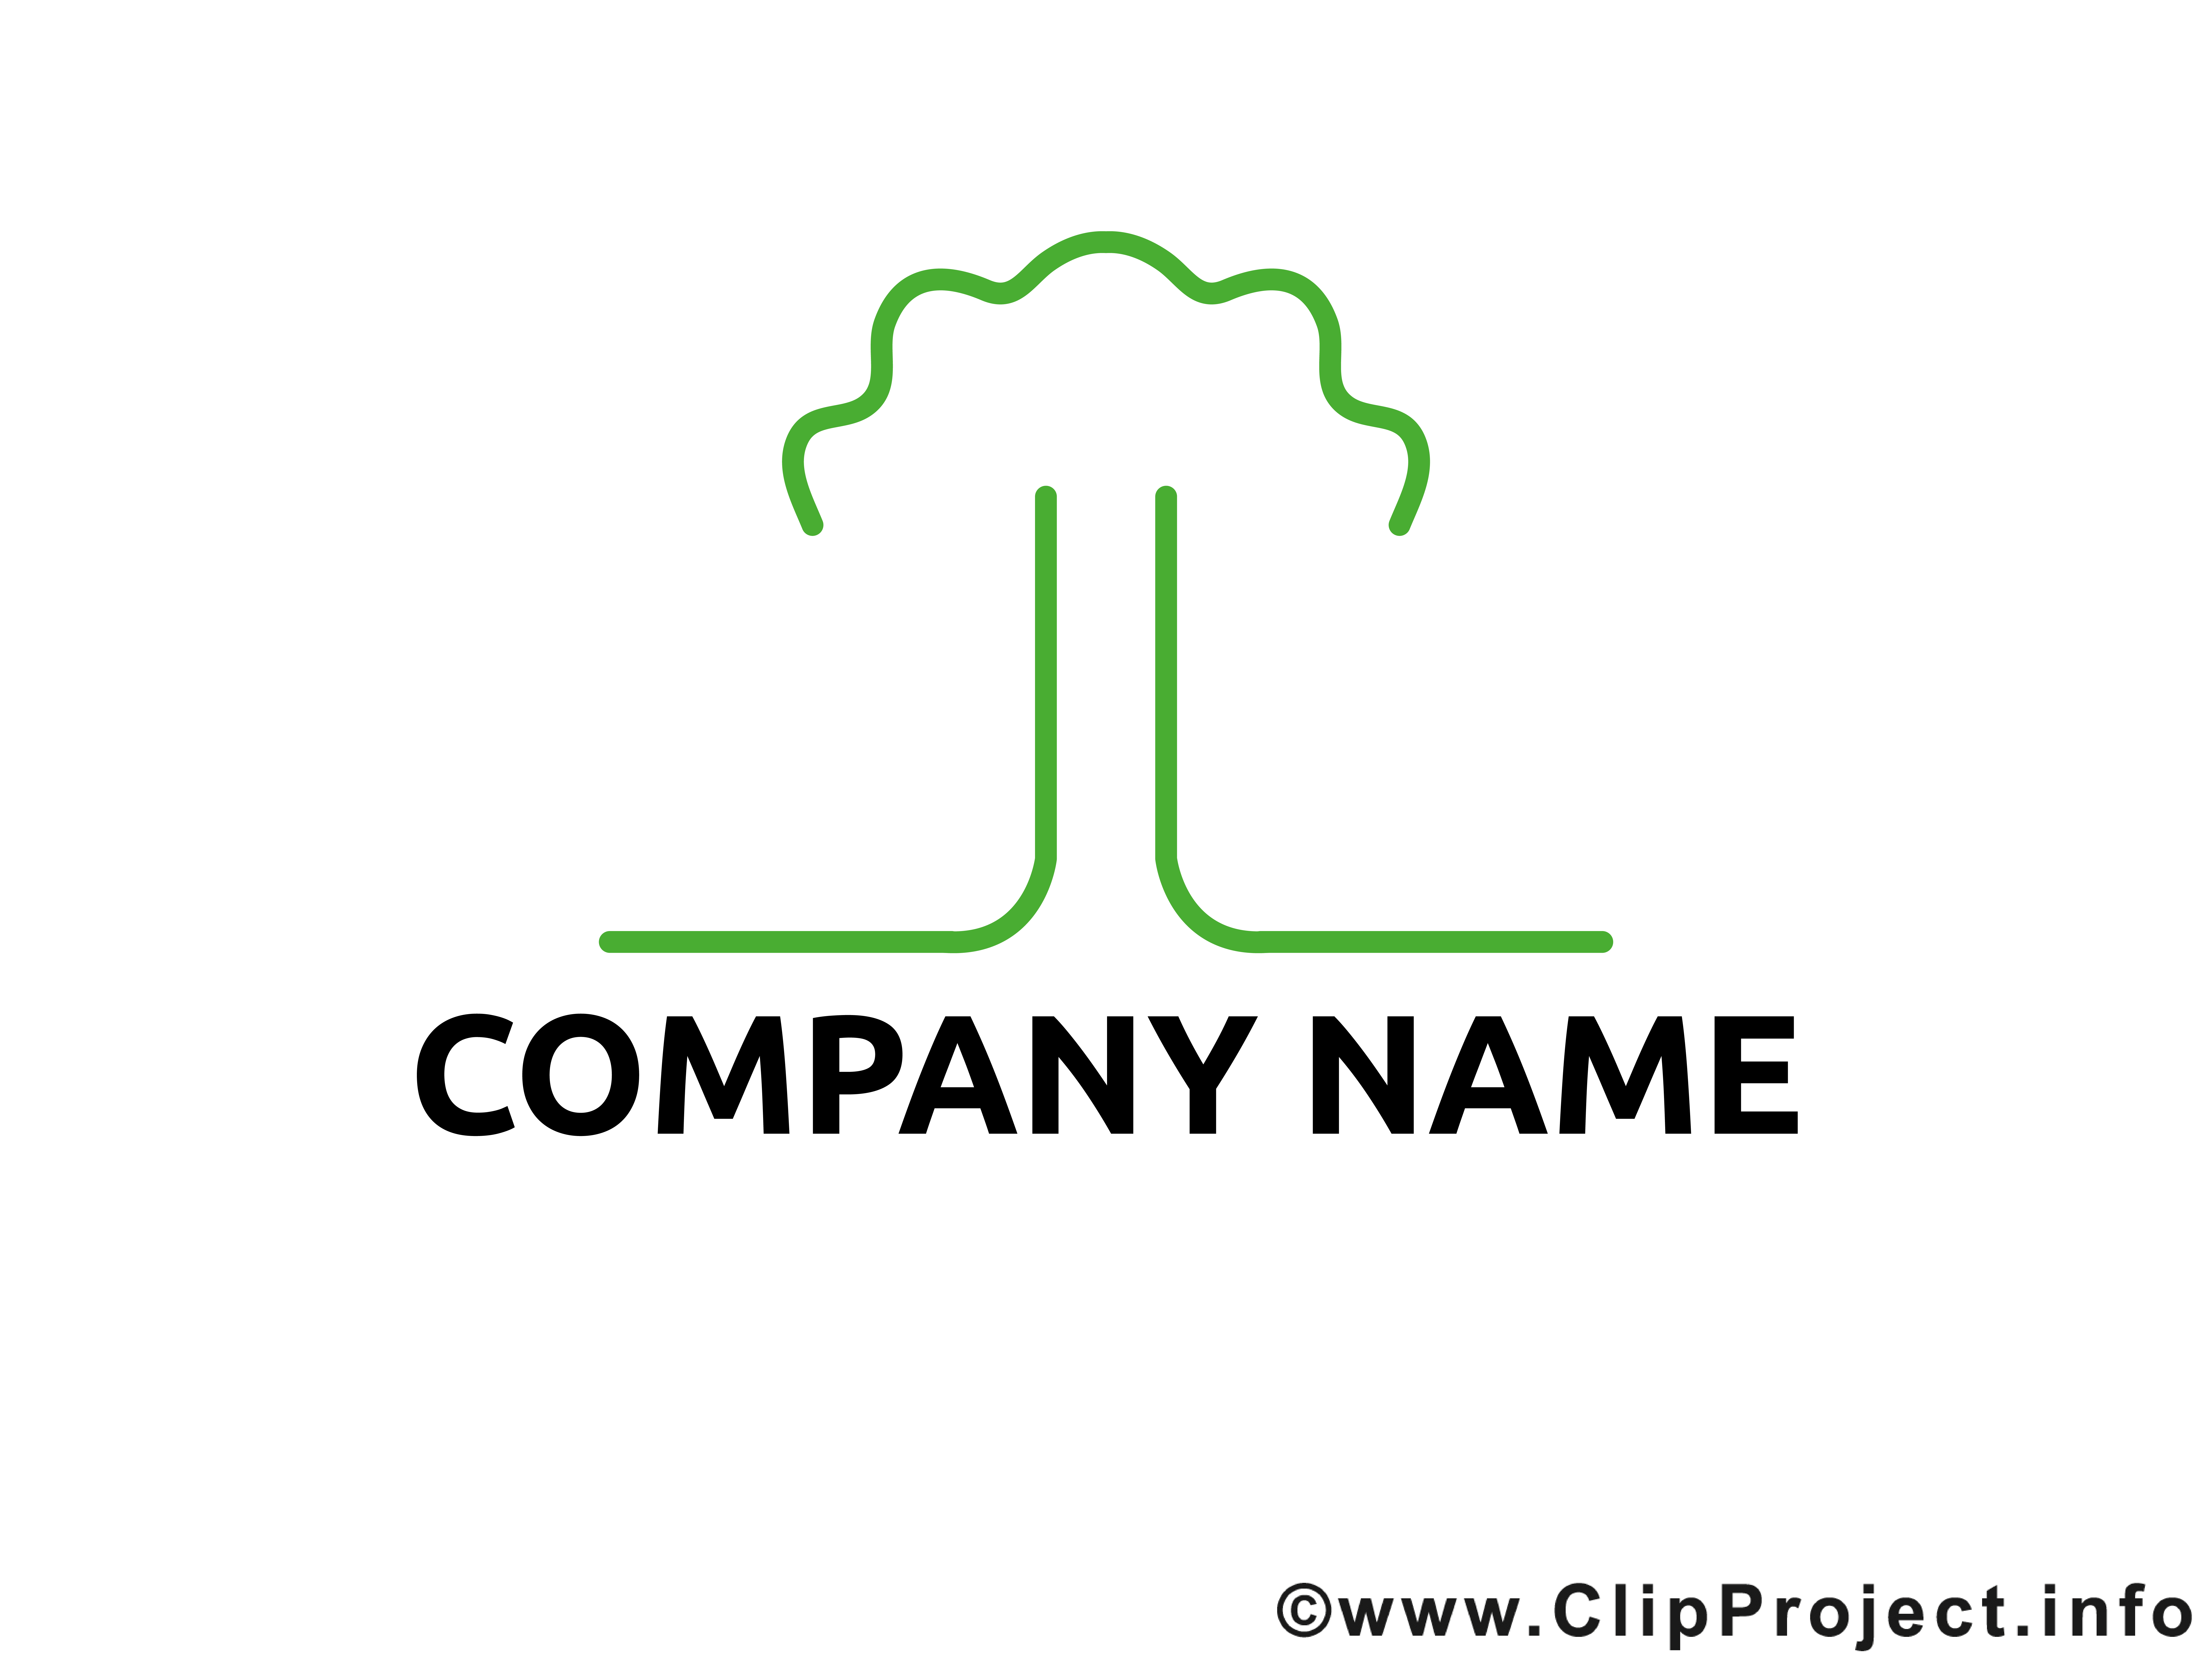 Clip art gratuit design – Logo images